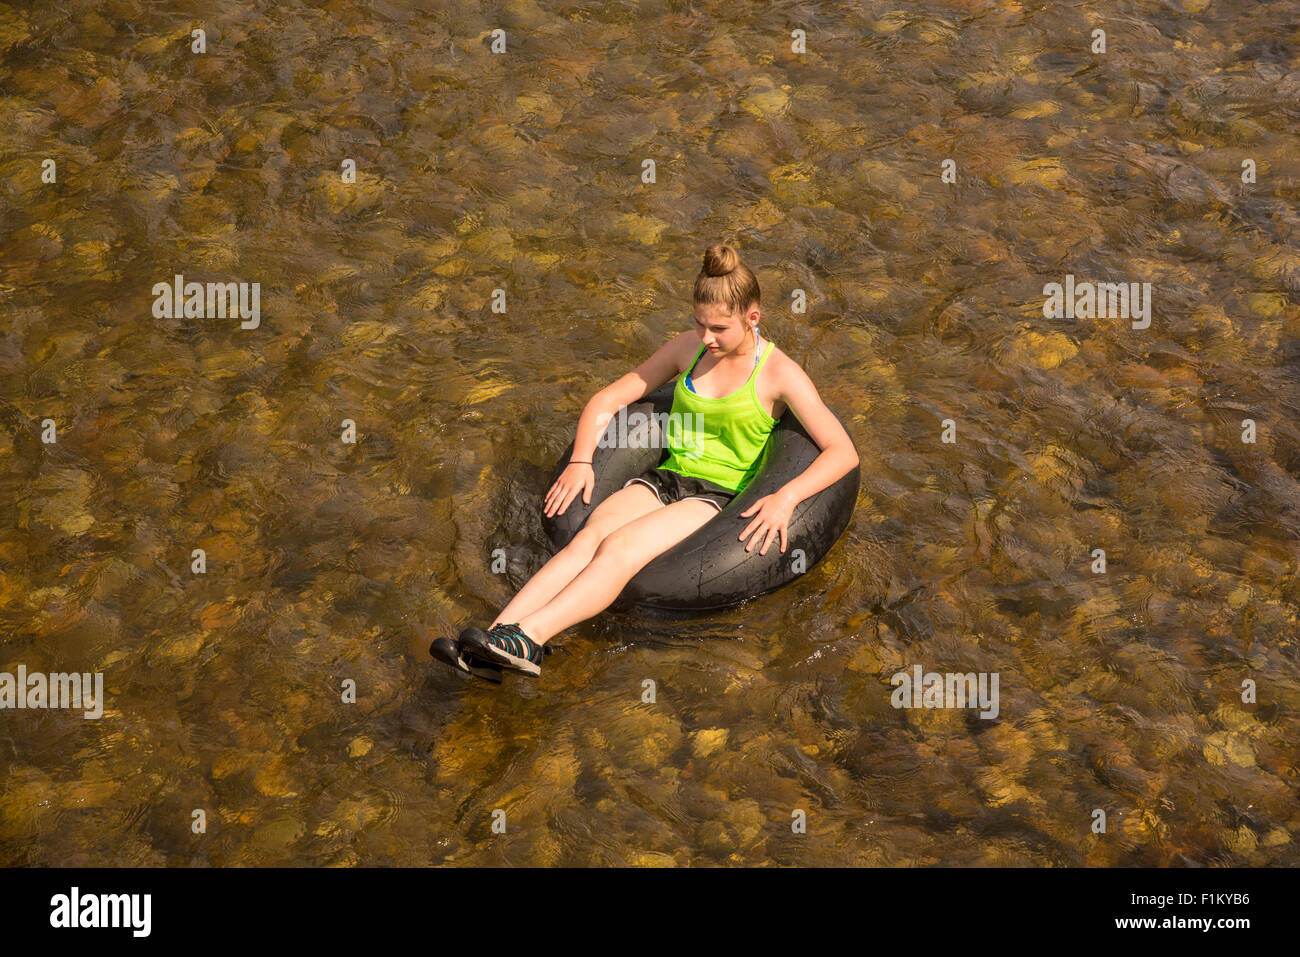 Le flottant de la rivière Boise, tubes de jeune fille de la rivière. Ville de Boise, Idaho, États-Unis Banque D'Images